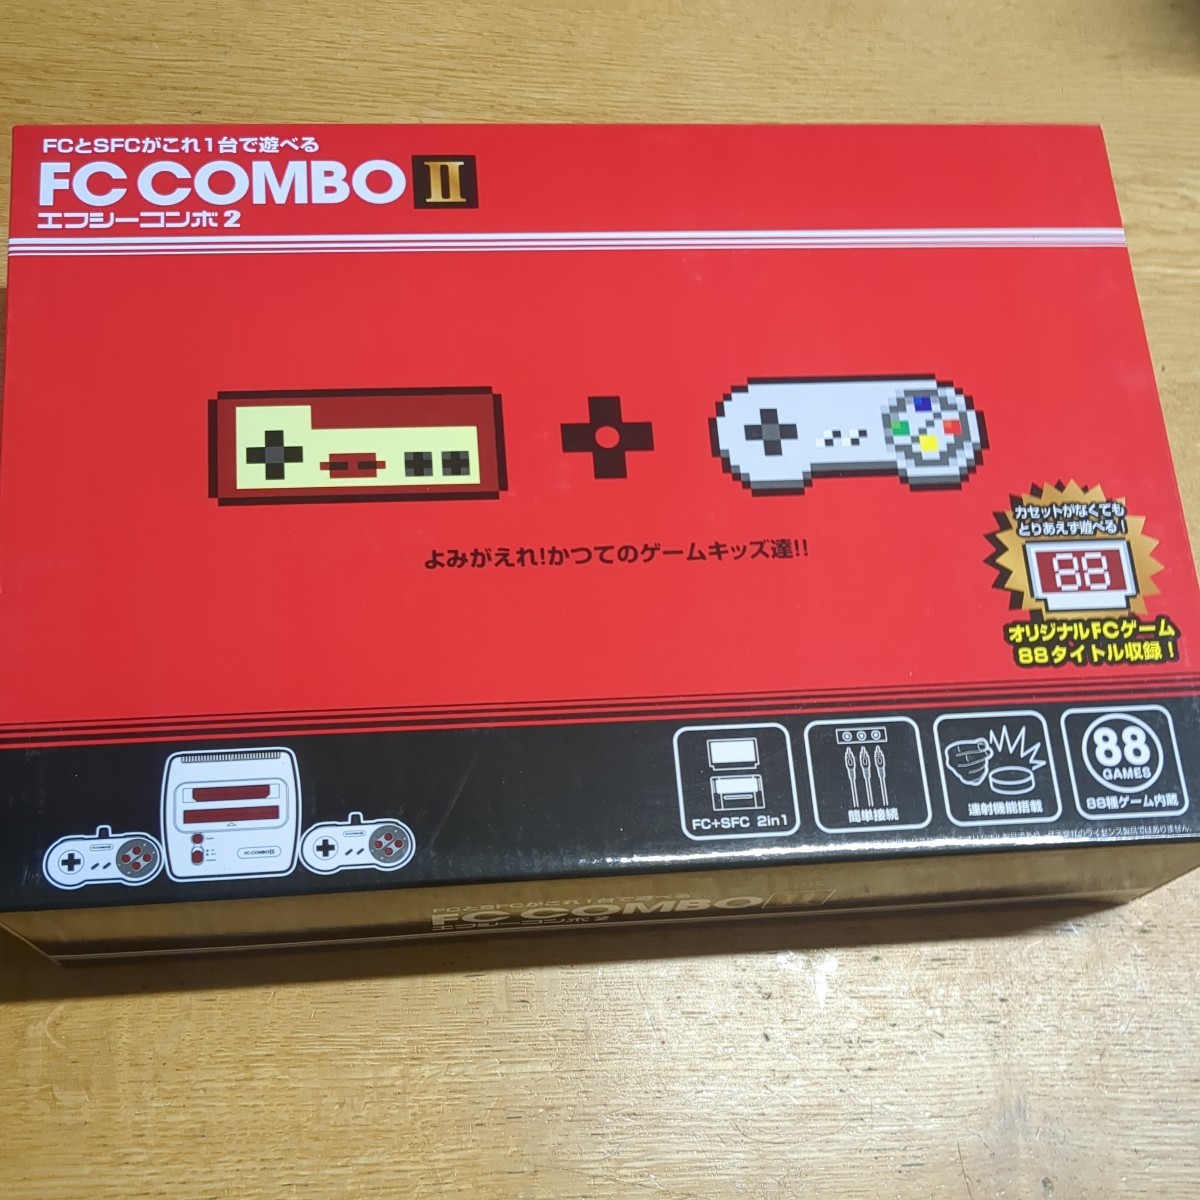 新品エフシーコンボ Ⅱ ★コロンバスサークル FC SFC互換機 ファミコン スーパーファミコン FC COMBO Ⅱ_画像1